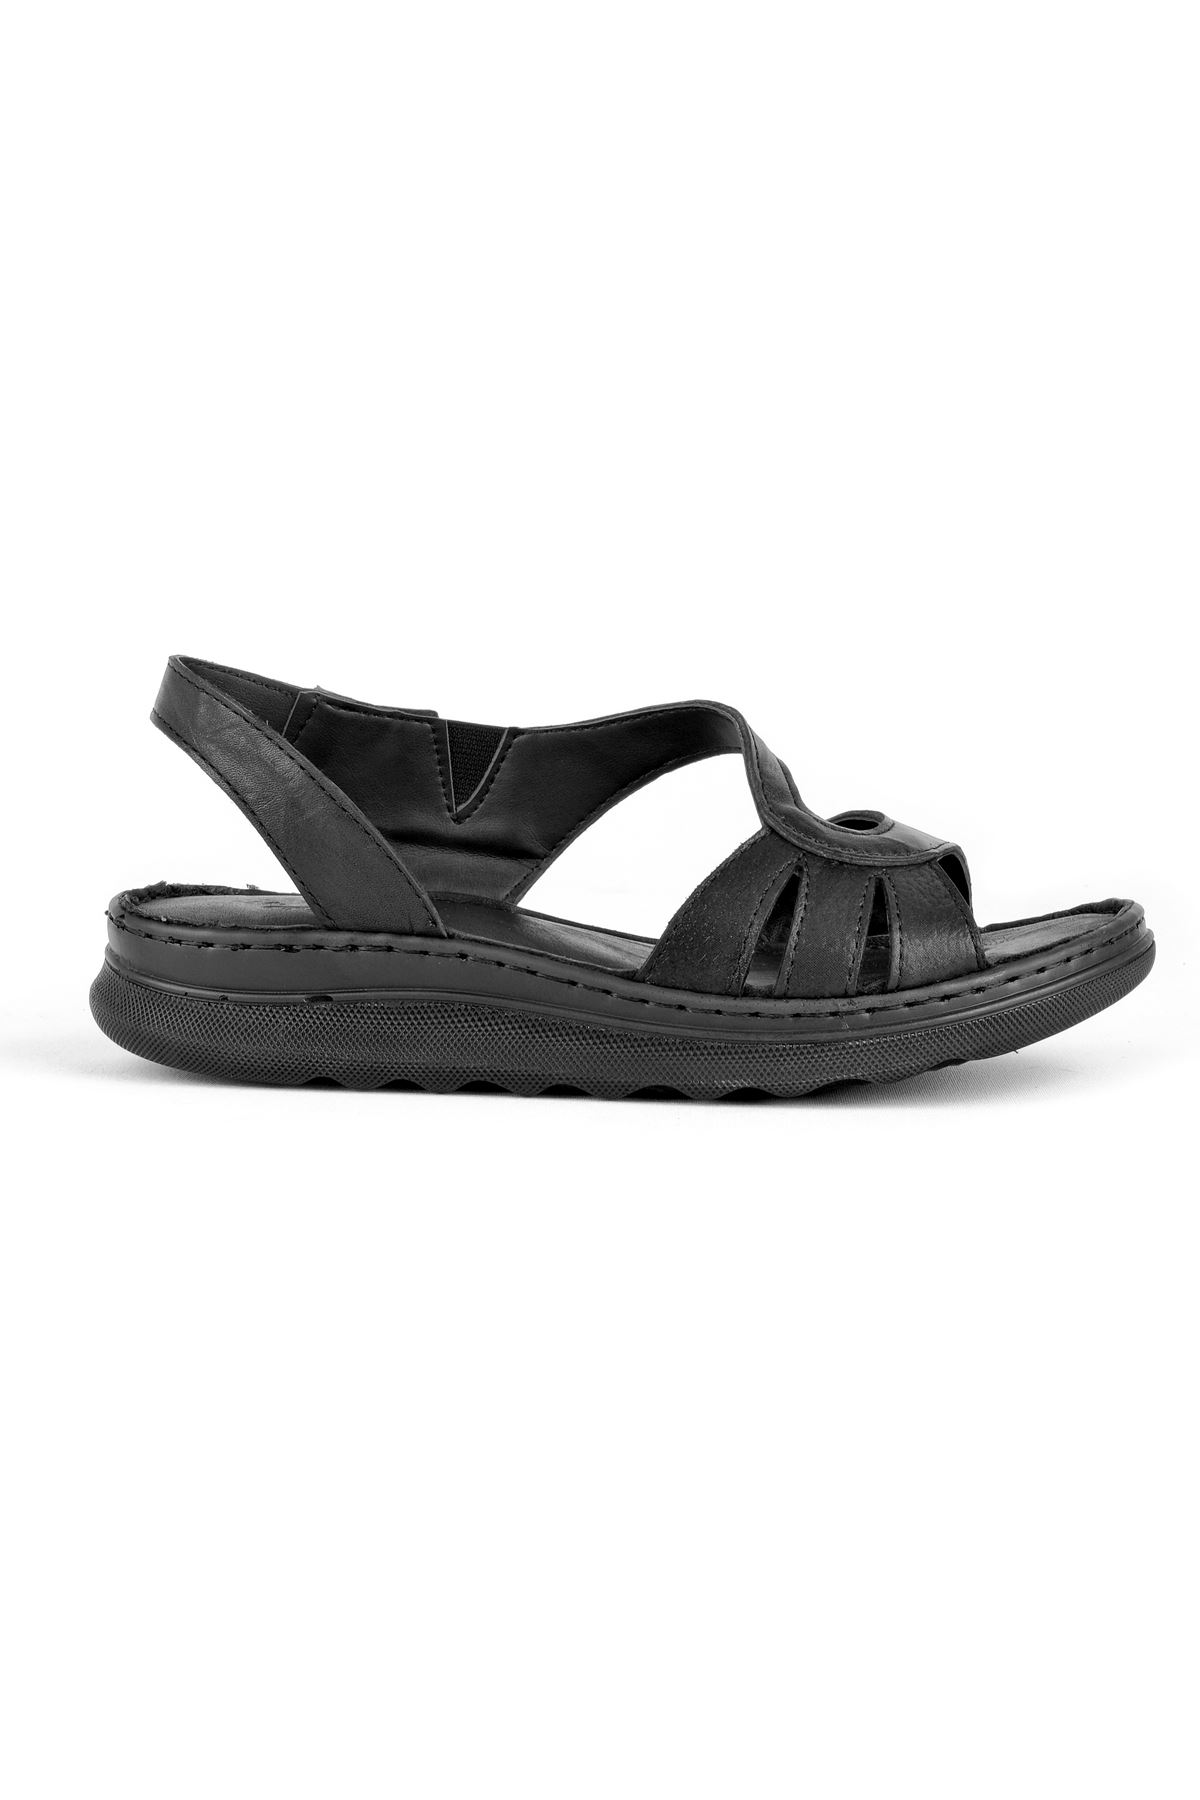 Brice Kadın Hakiki Deri Oval bantlı Sandalet-siyah